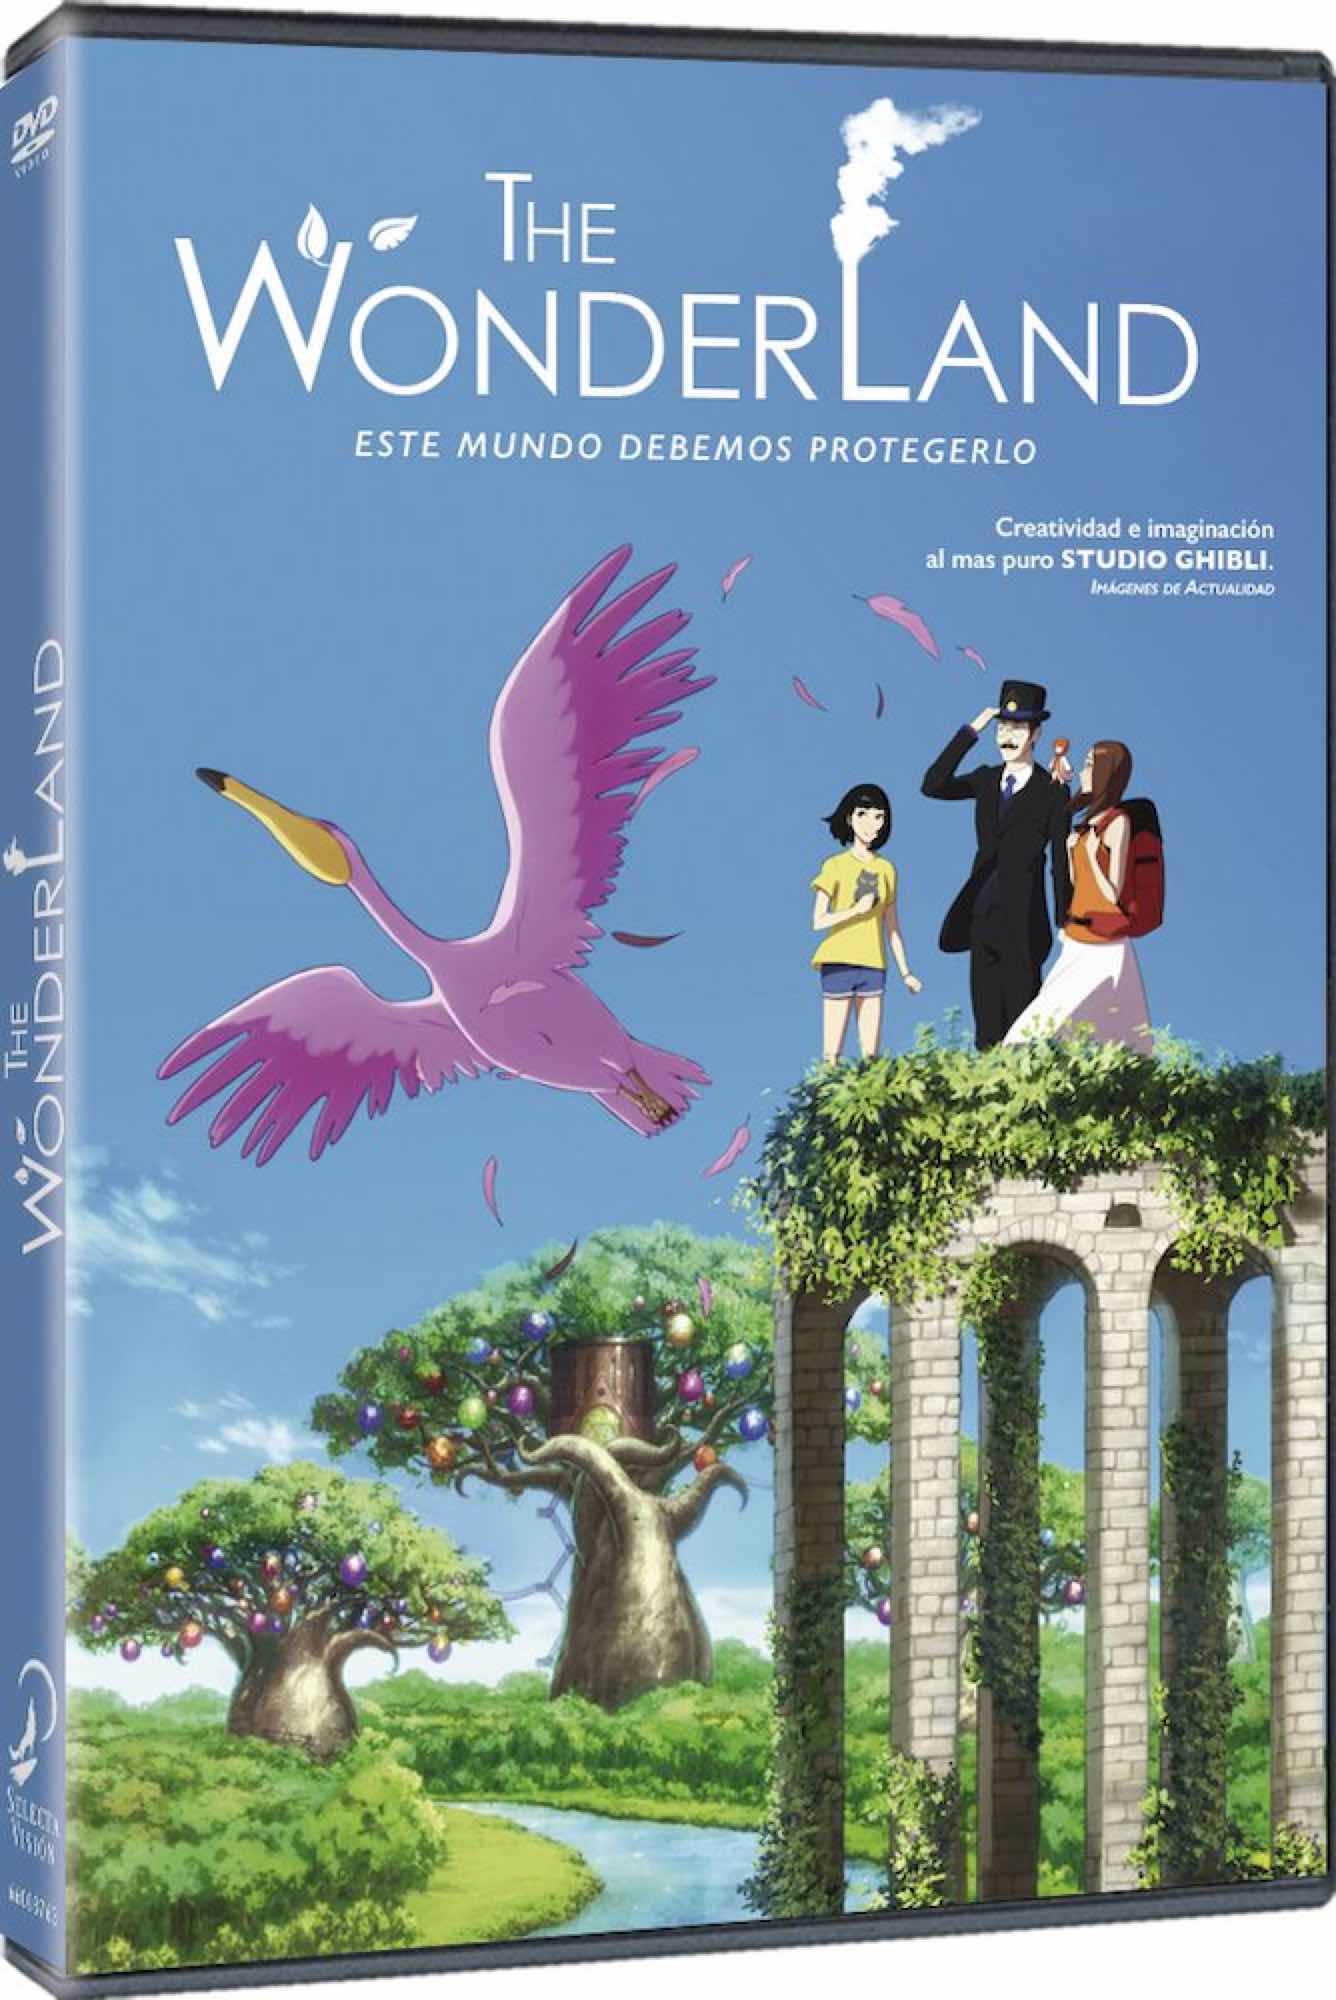 DVD THE WONDERLAND